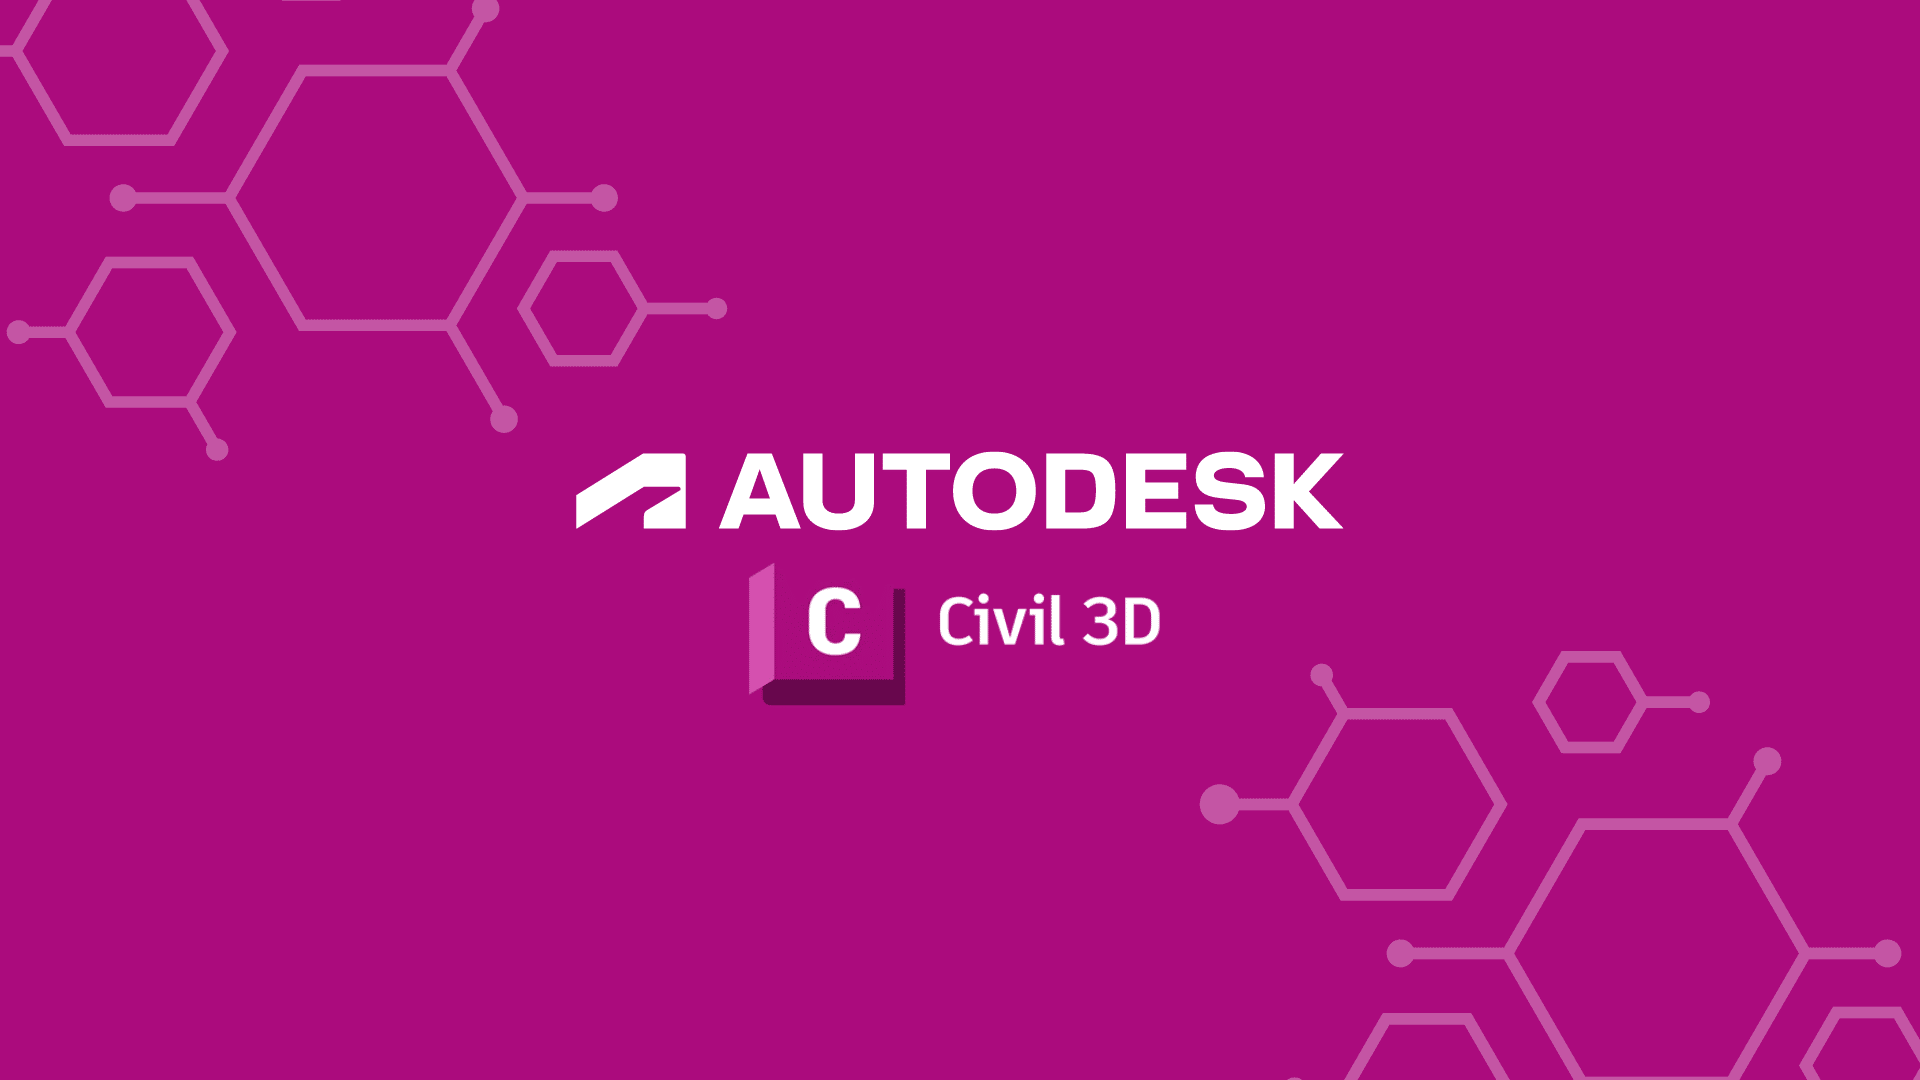 Autodesk Civil 3D Logo